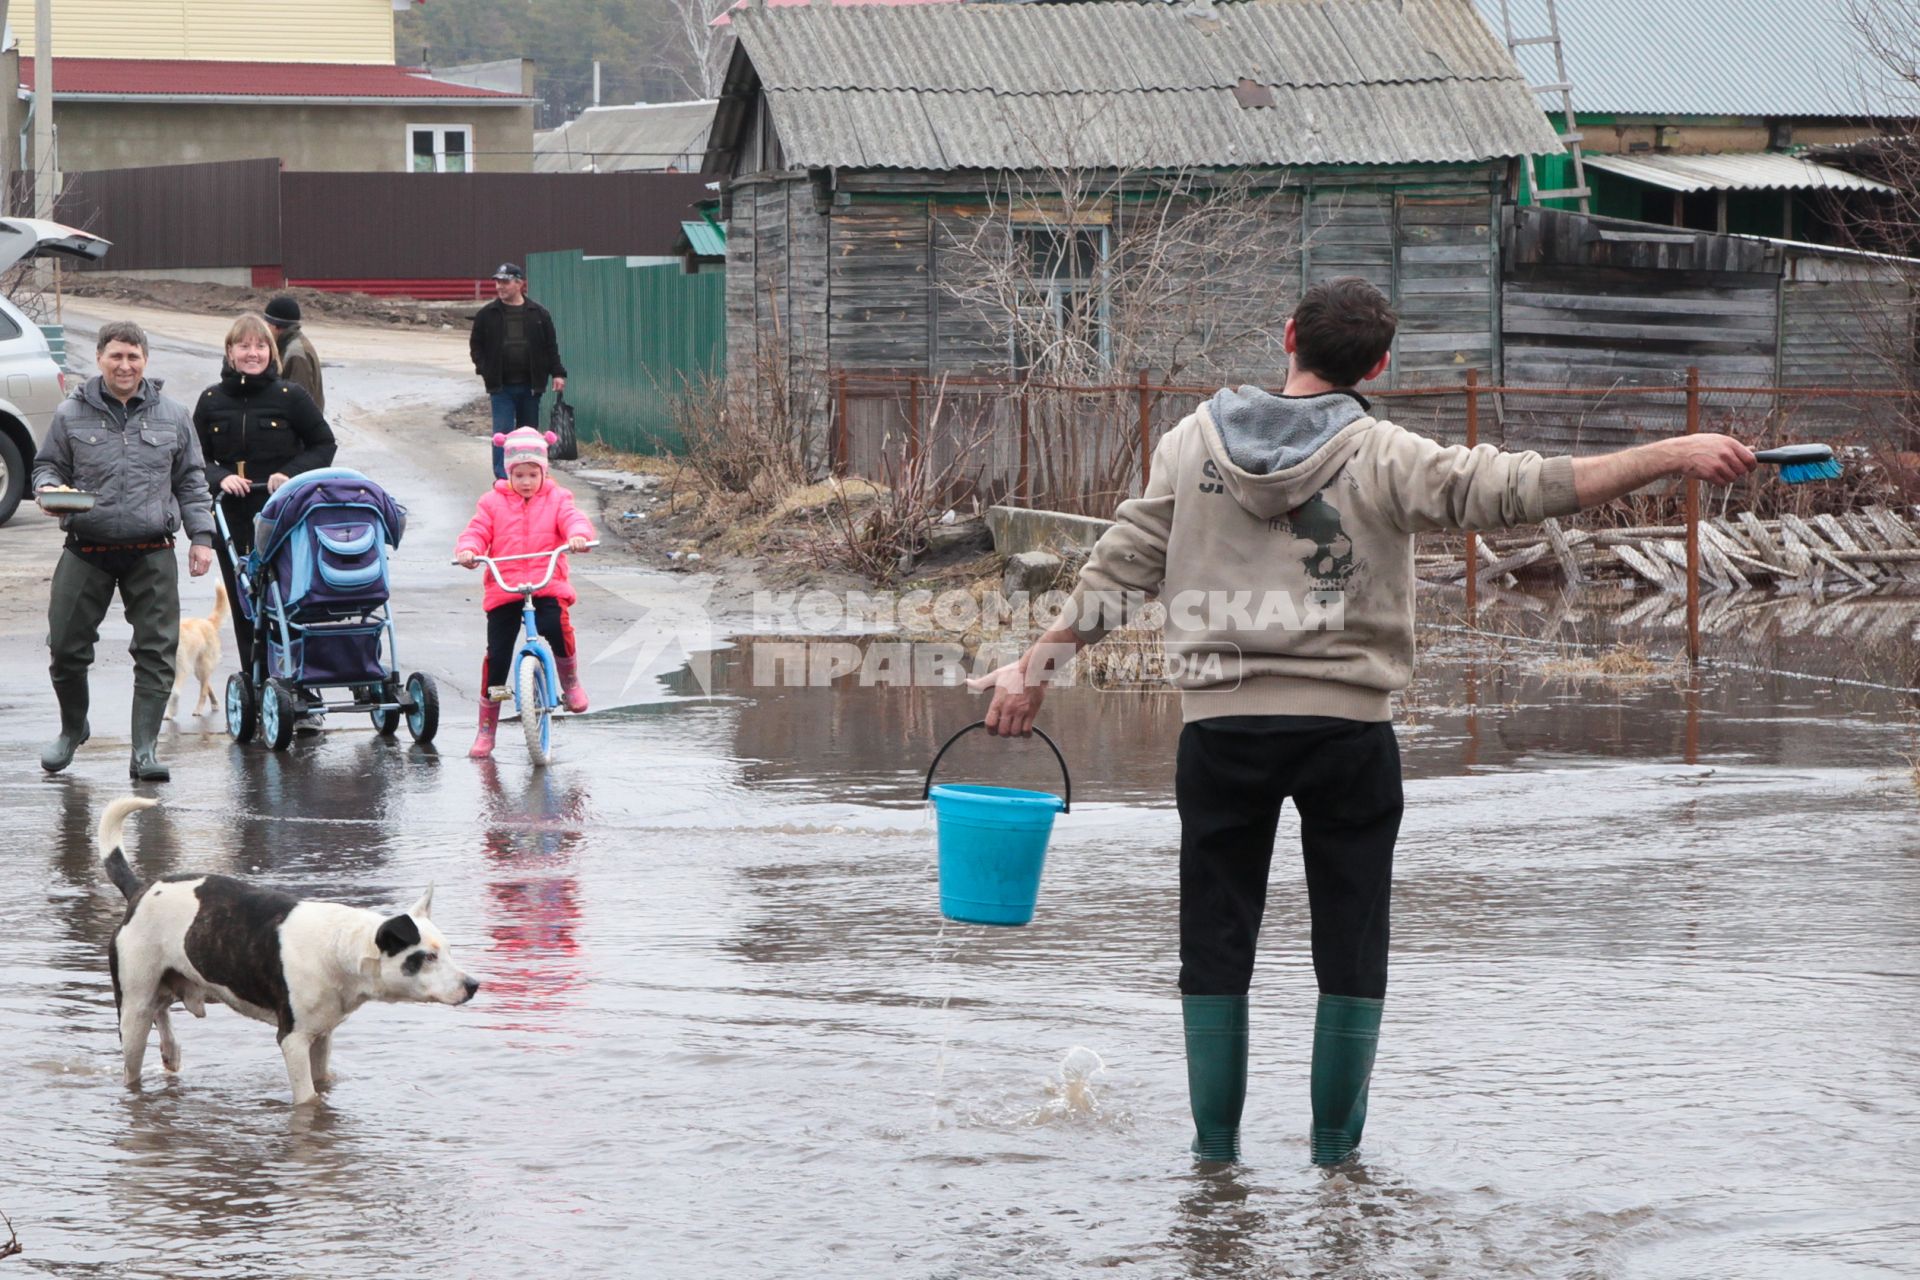 Мужчина с ведром воды идет по затопленной улице, на него смотрят жители села.